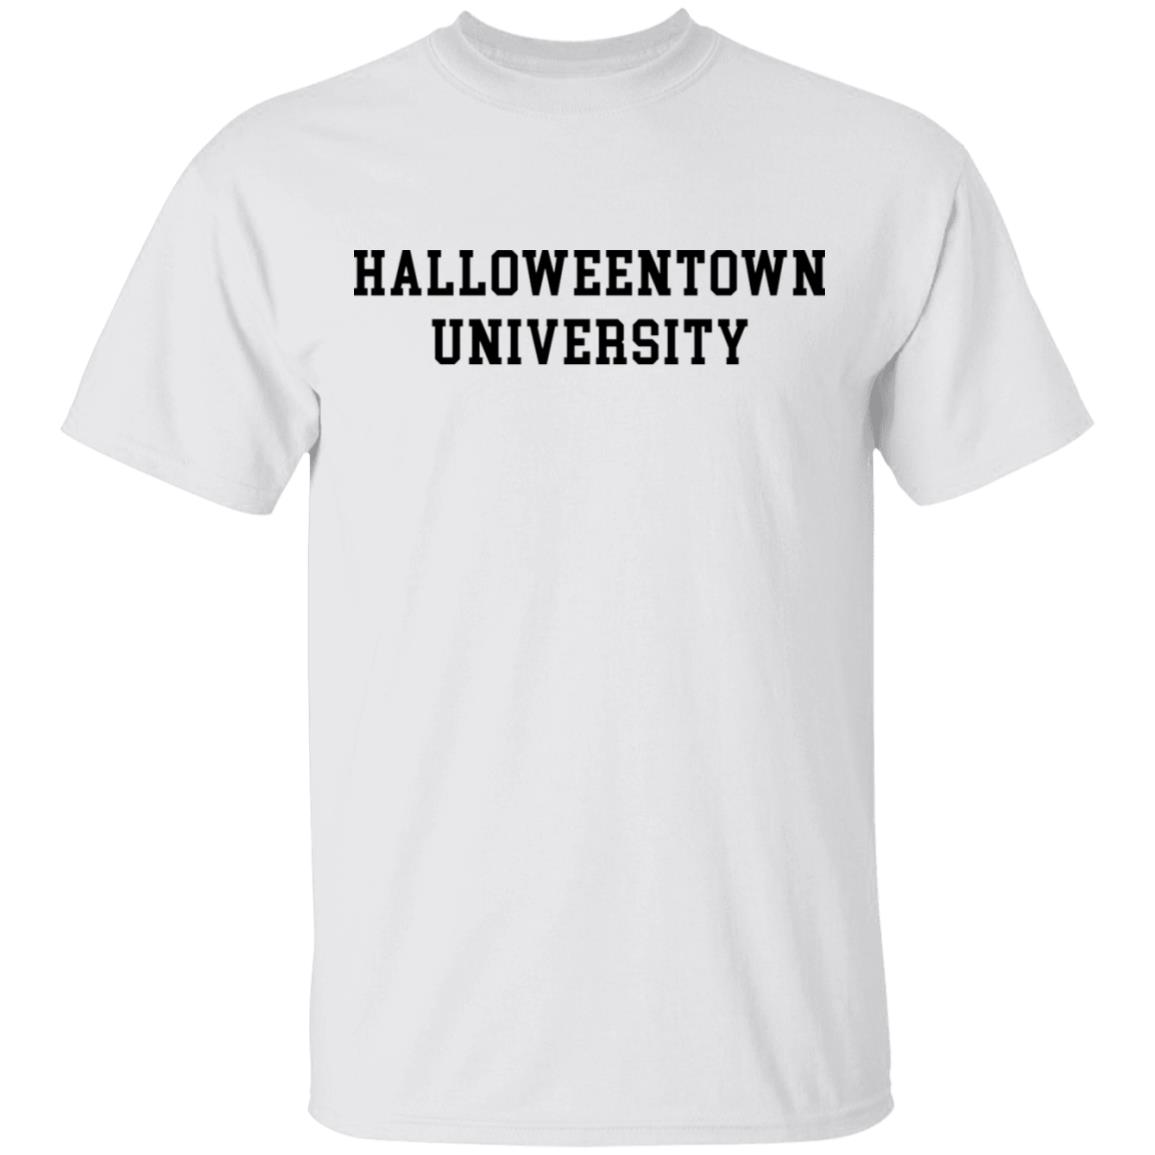 Download Halloweentown university shirt, hoodie, long sleeve